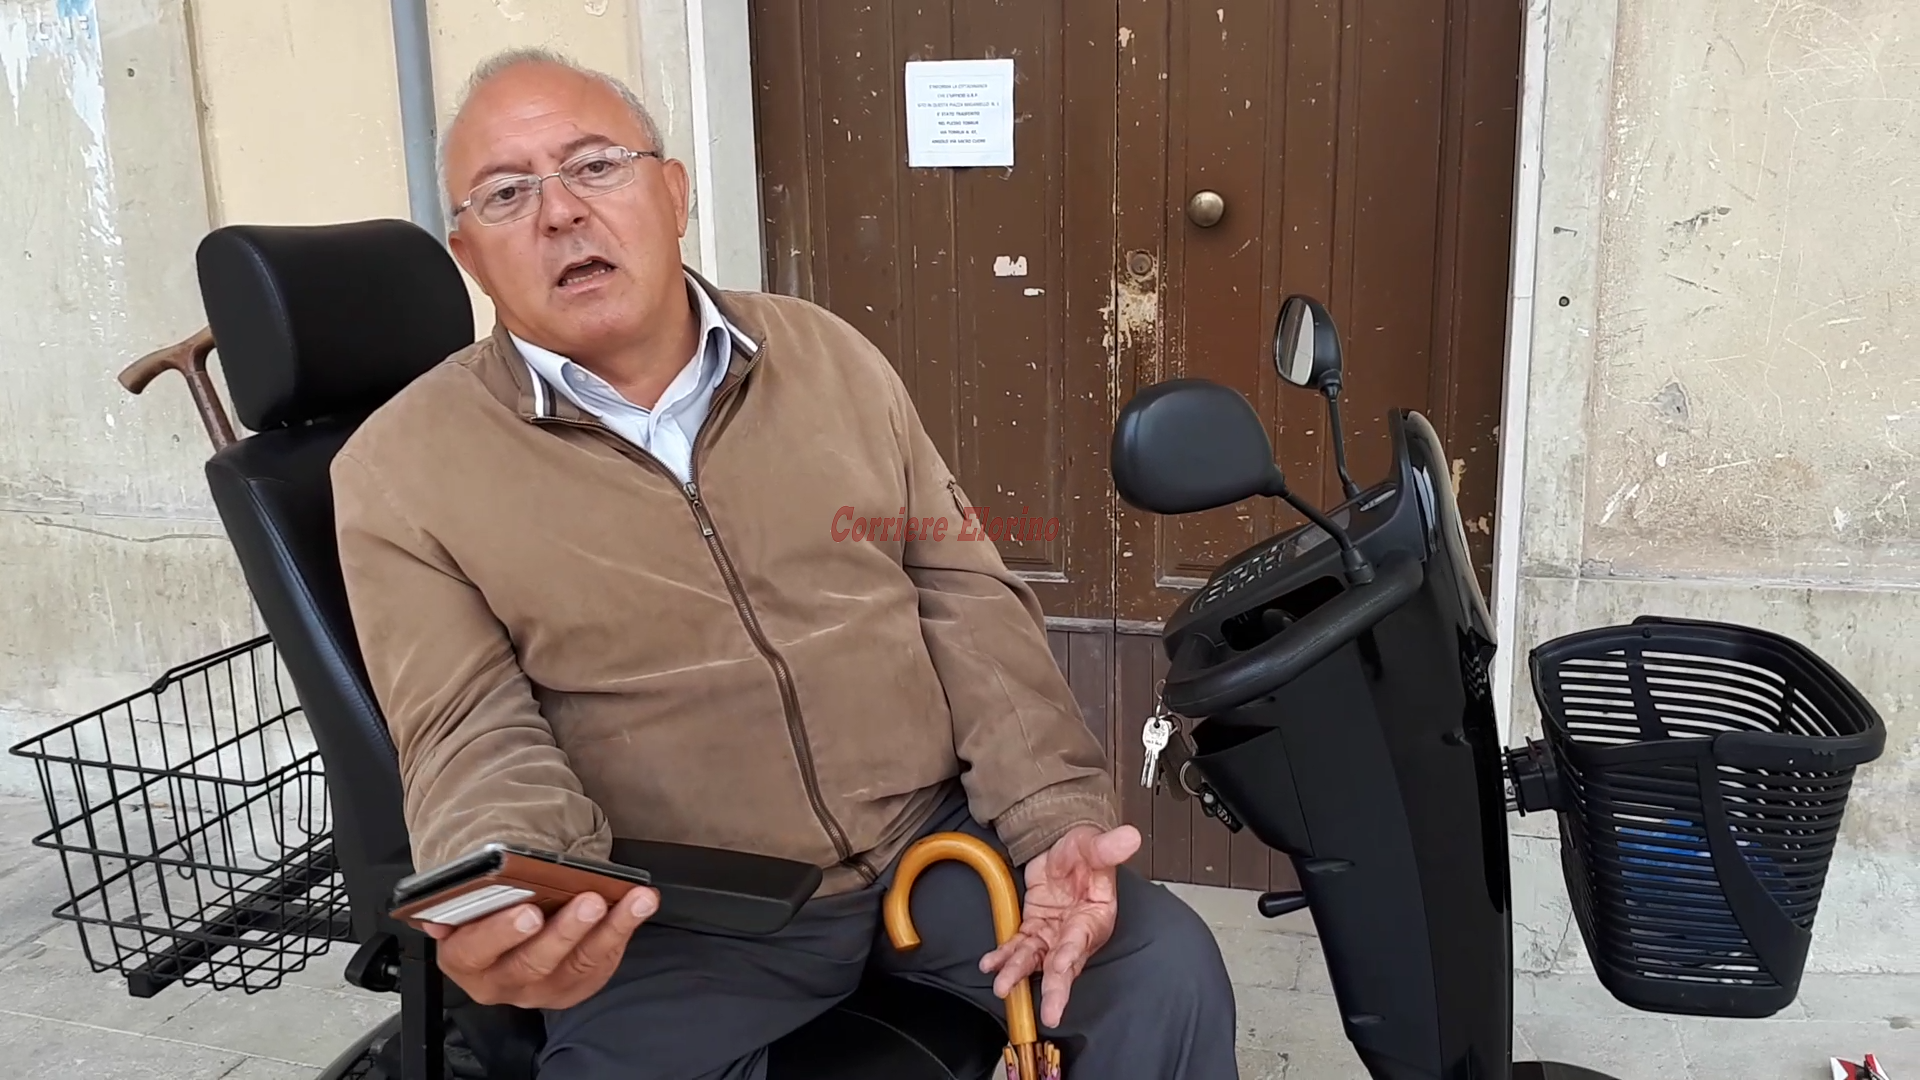 Il Mid interviene sull’ascensore per disabili “vietato ai disabili in sedia a rotelle”